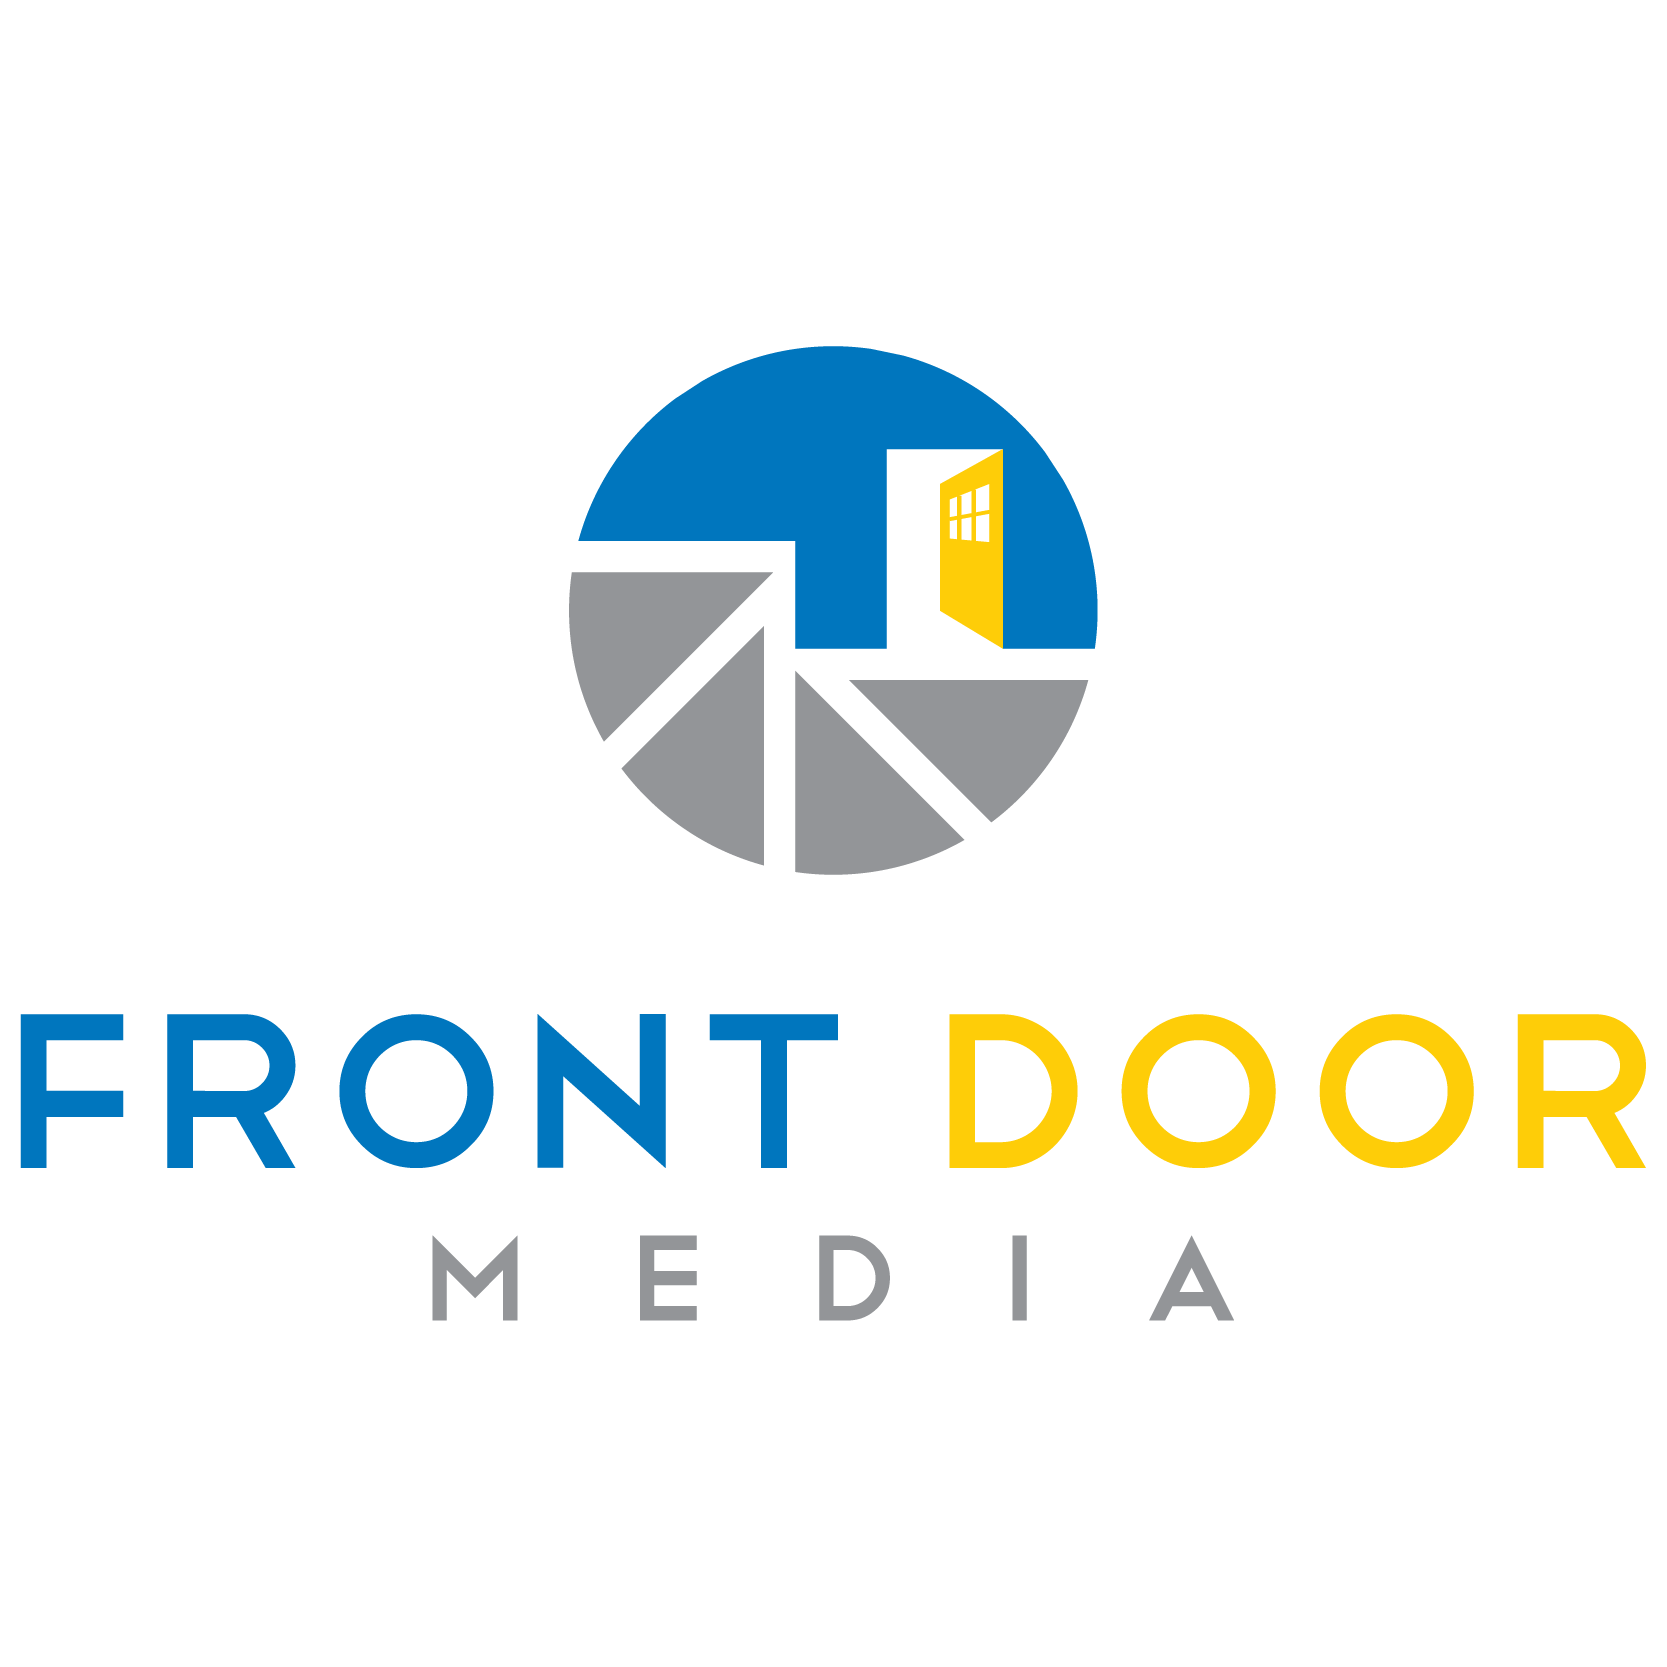 Frontdoors Media